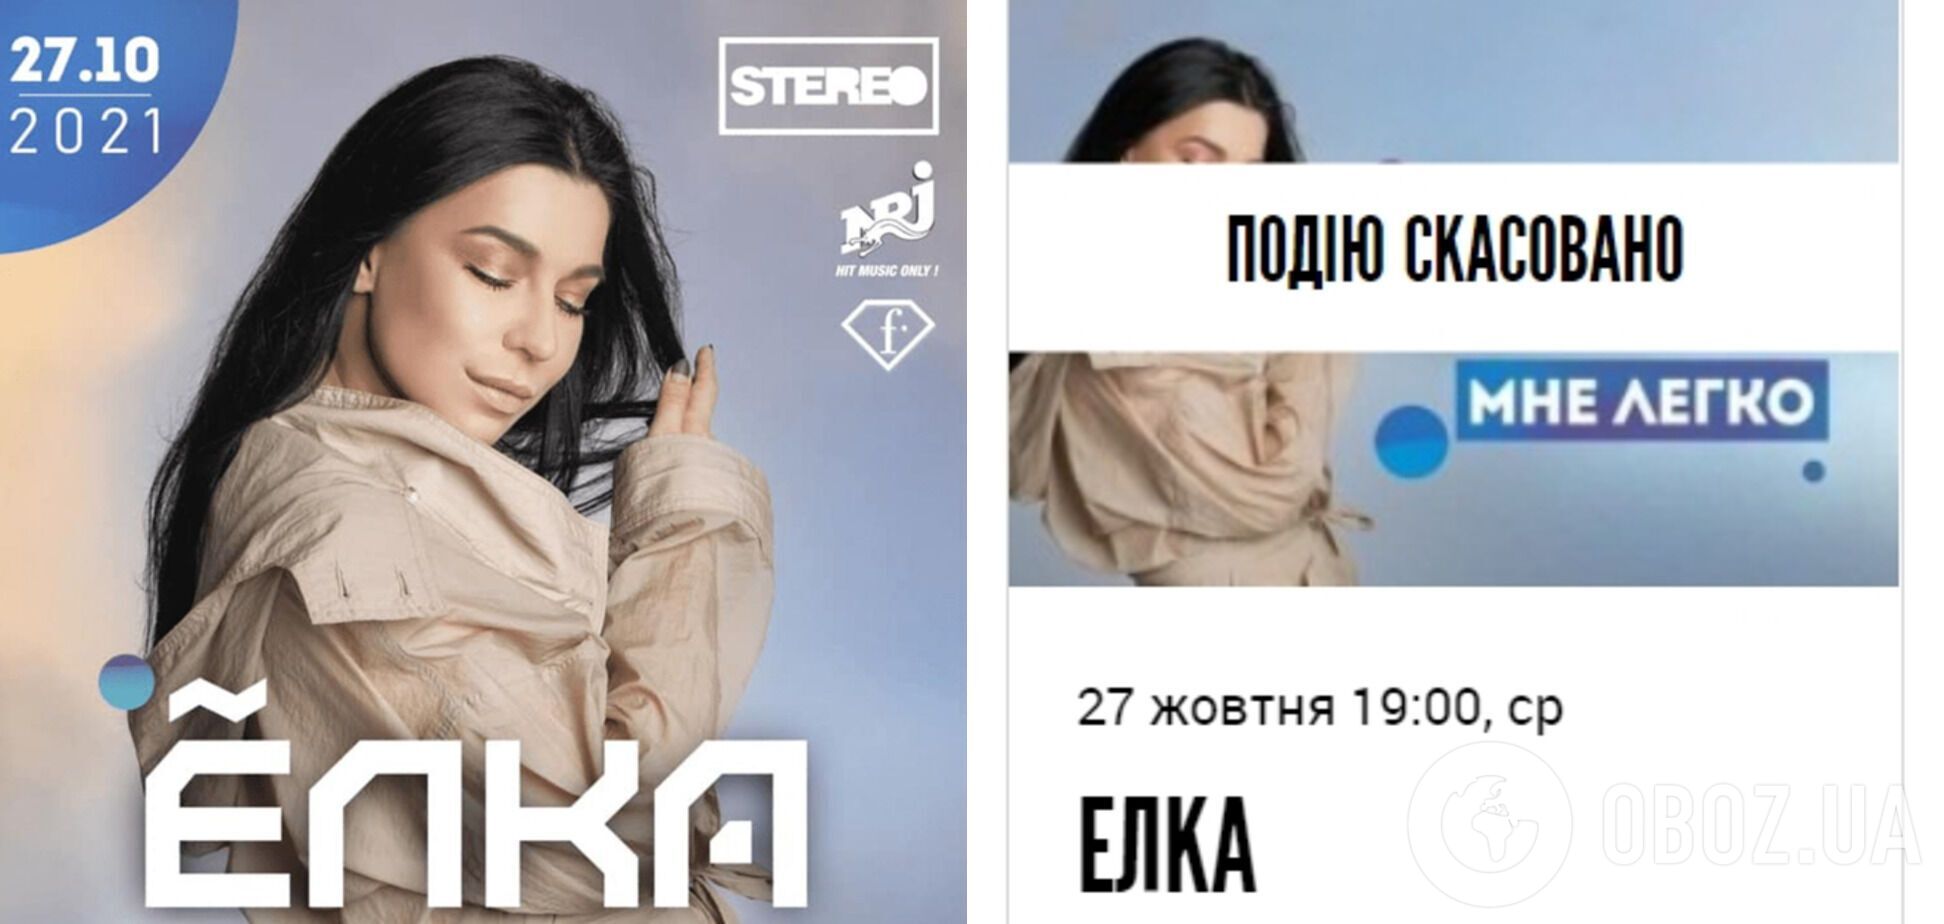 27 октября мог бы состояться первый концерт Елки в Украине за последние семь лет